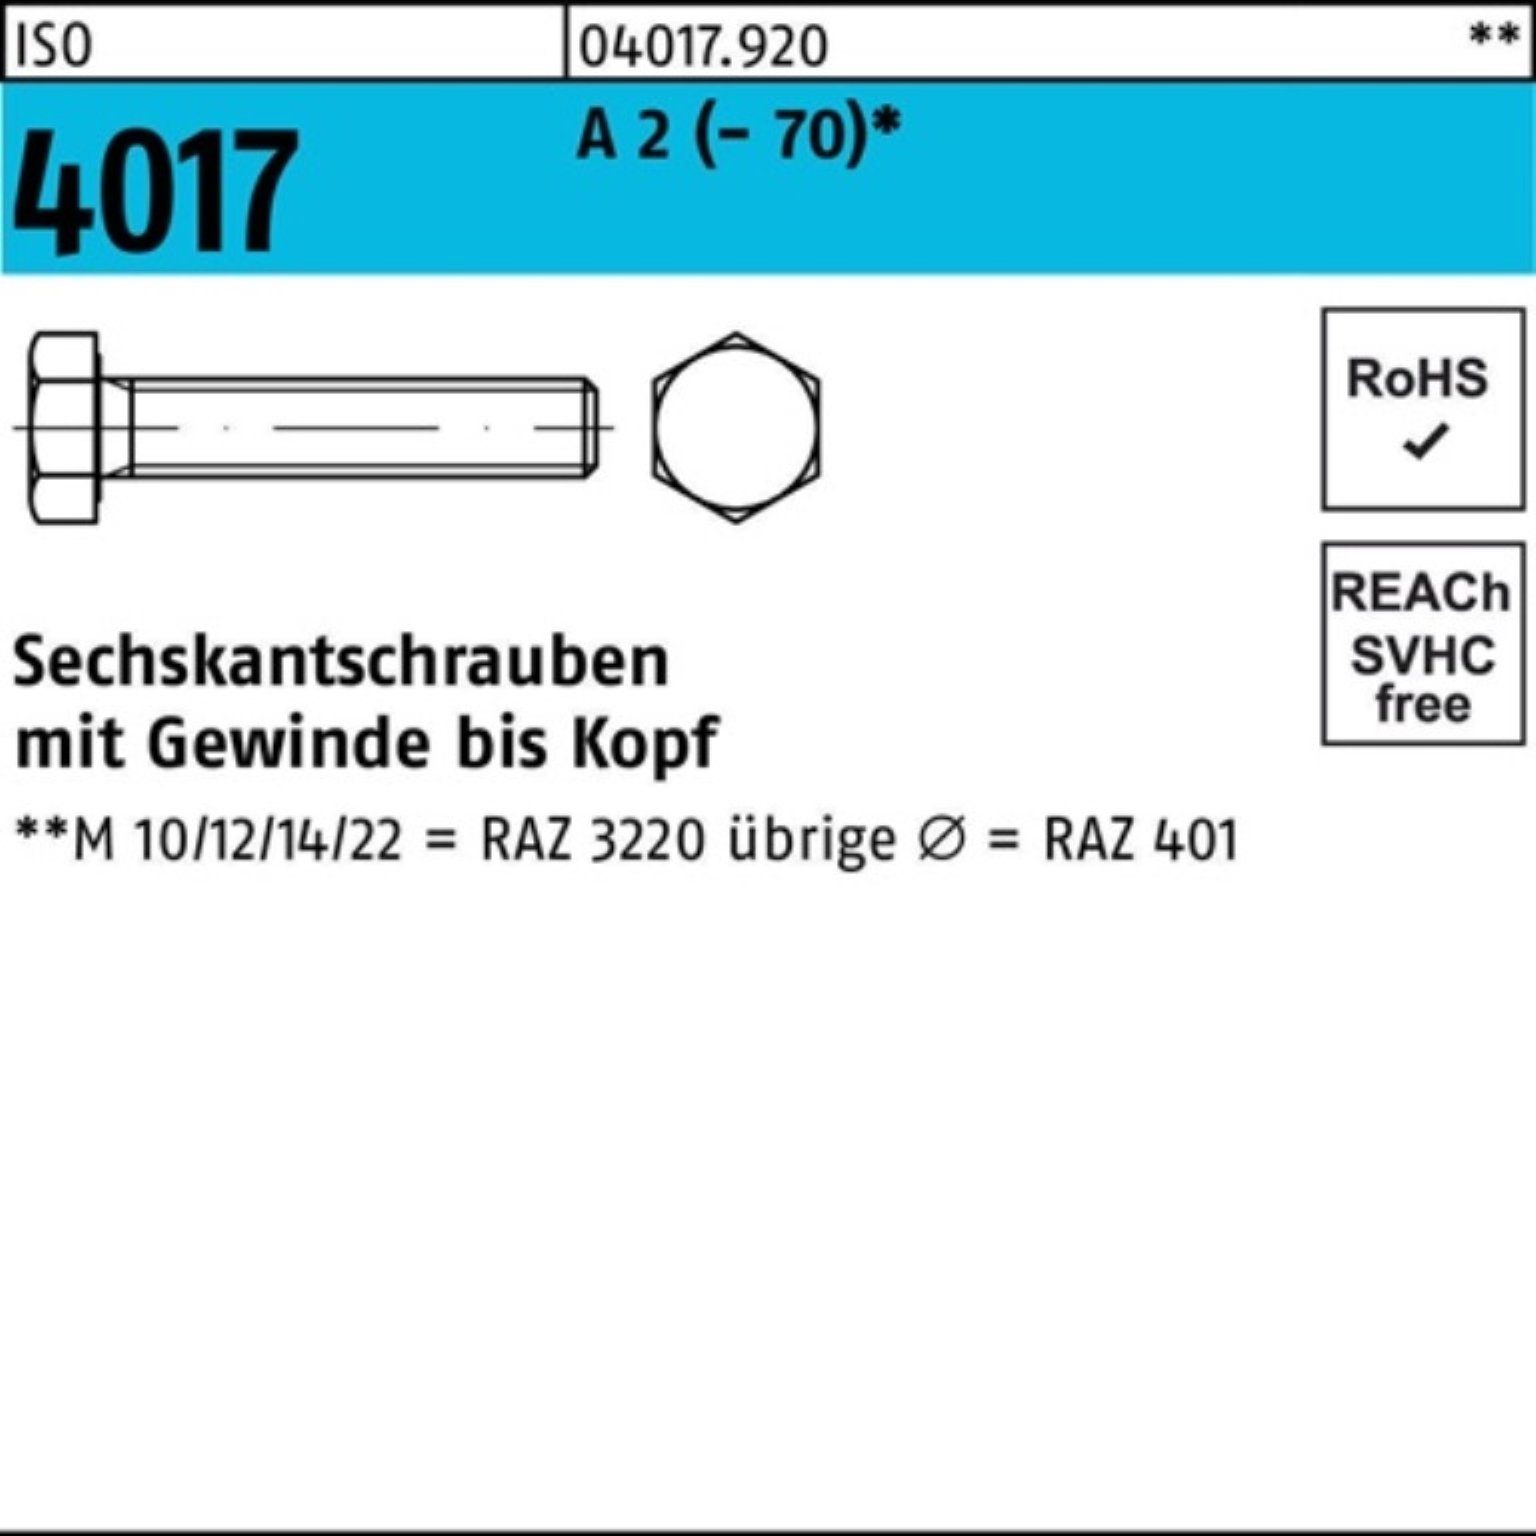 Bufab Sechskantschraube 100er Pack Sechskantschraube ISO 4017 VG M20x 110 A 2 (70) 10 Stück